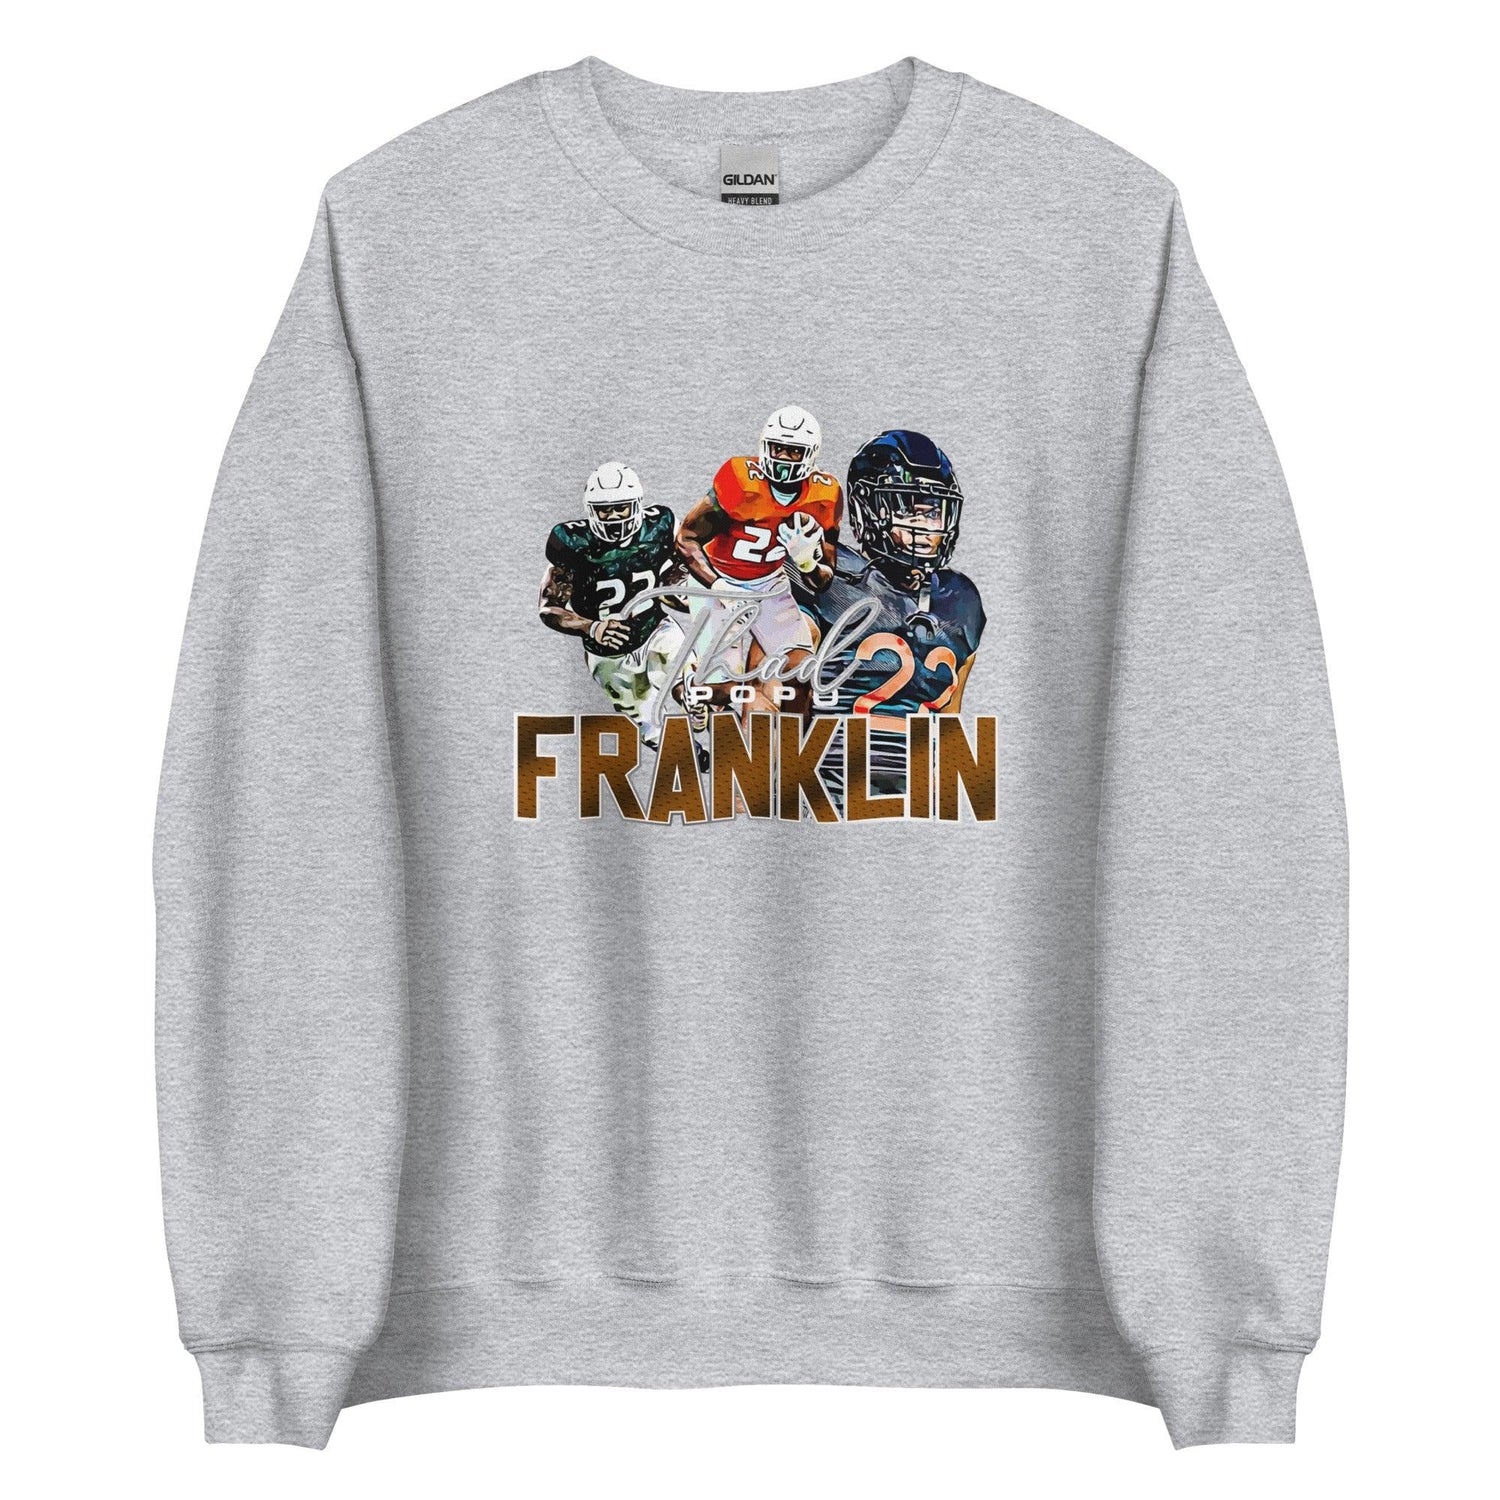 Thad Franklin "Limited Edition" Sweatshirt - Fan Arch